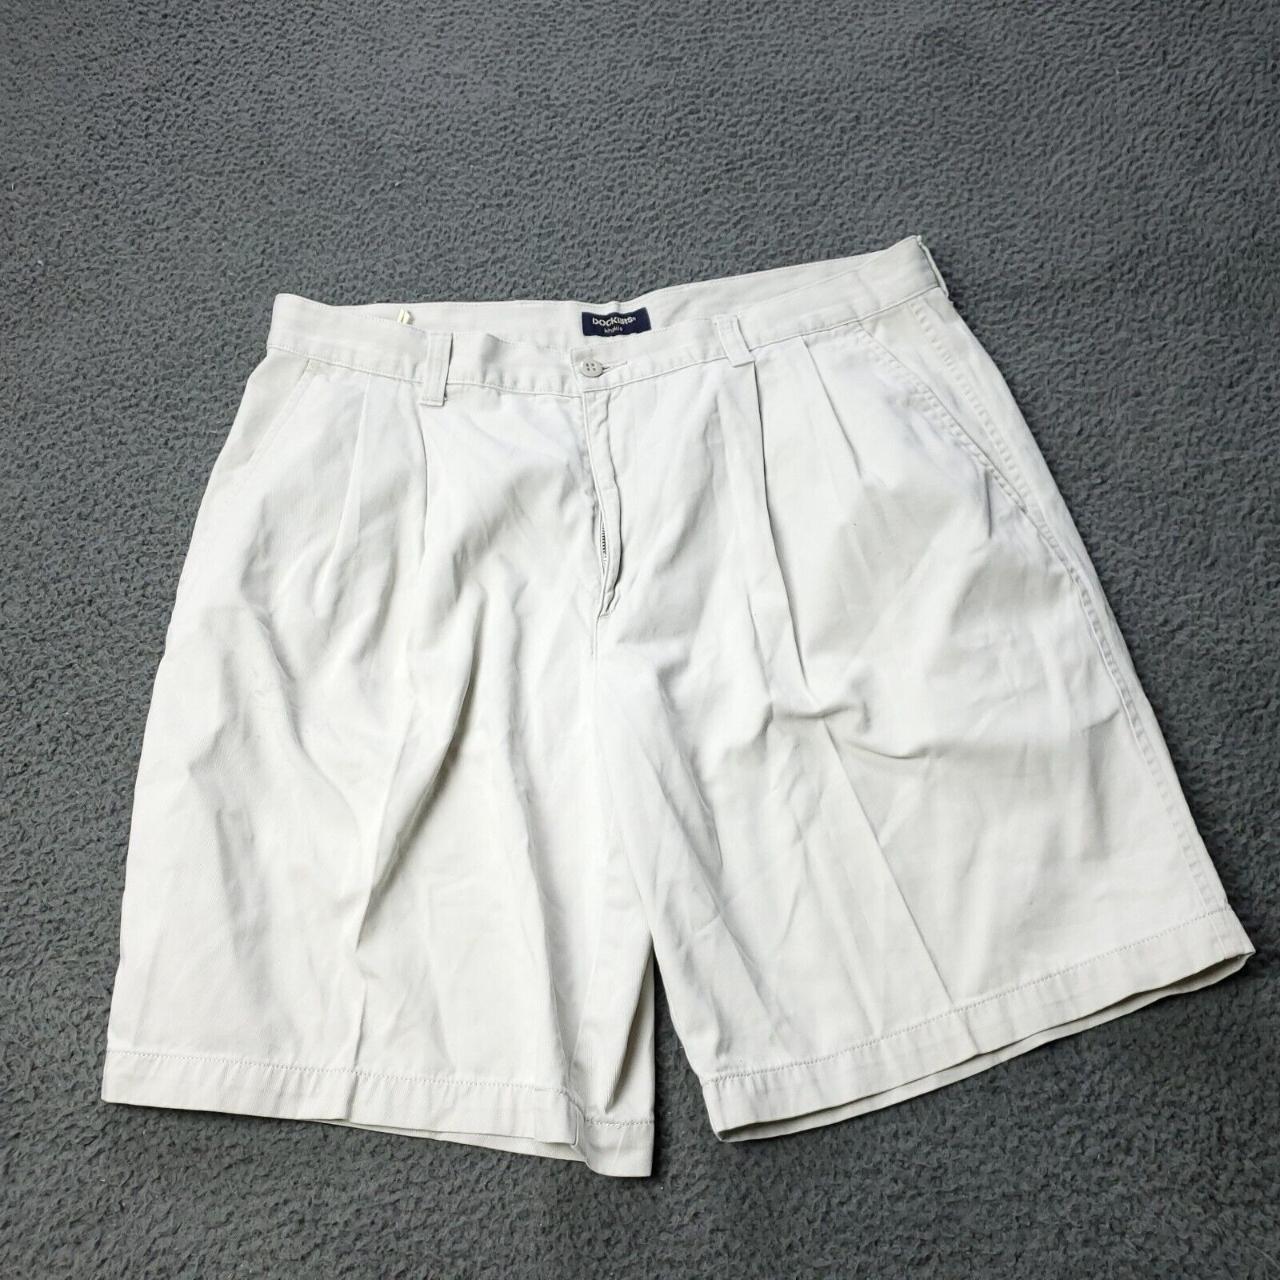 Dockers Men's White Shorts